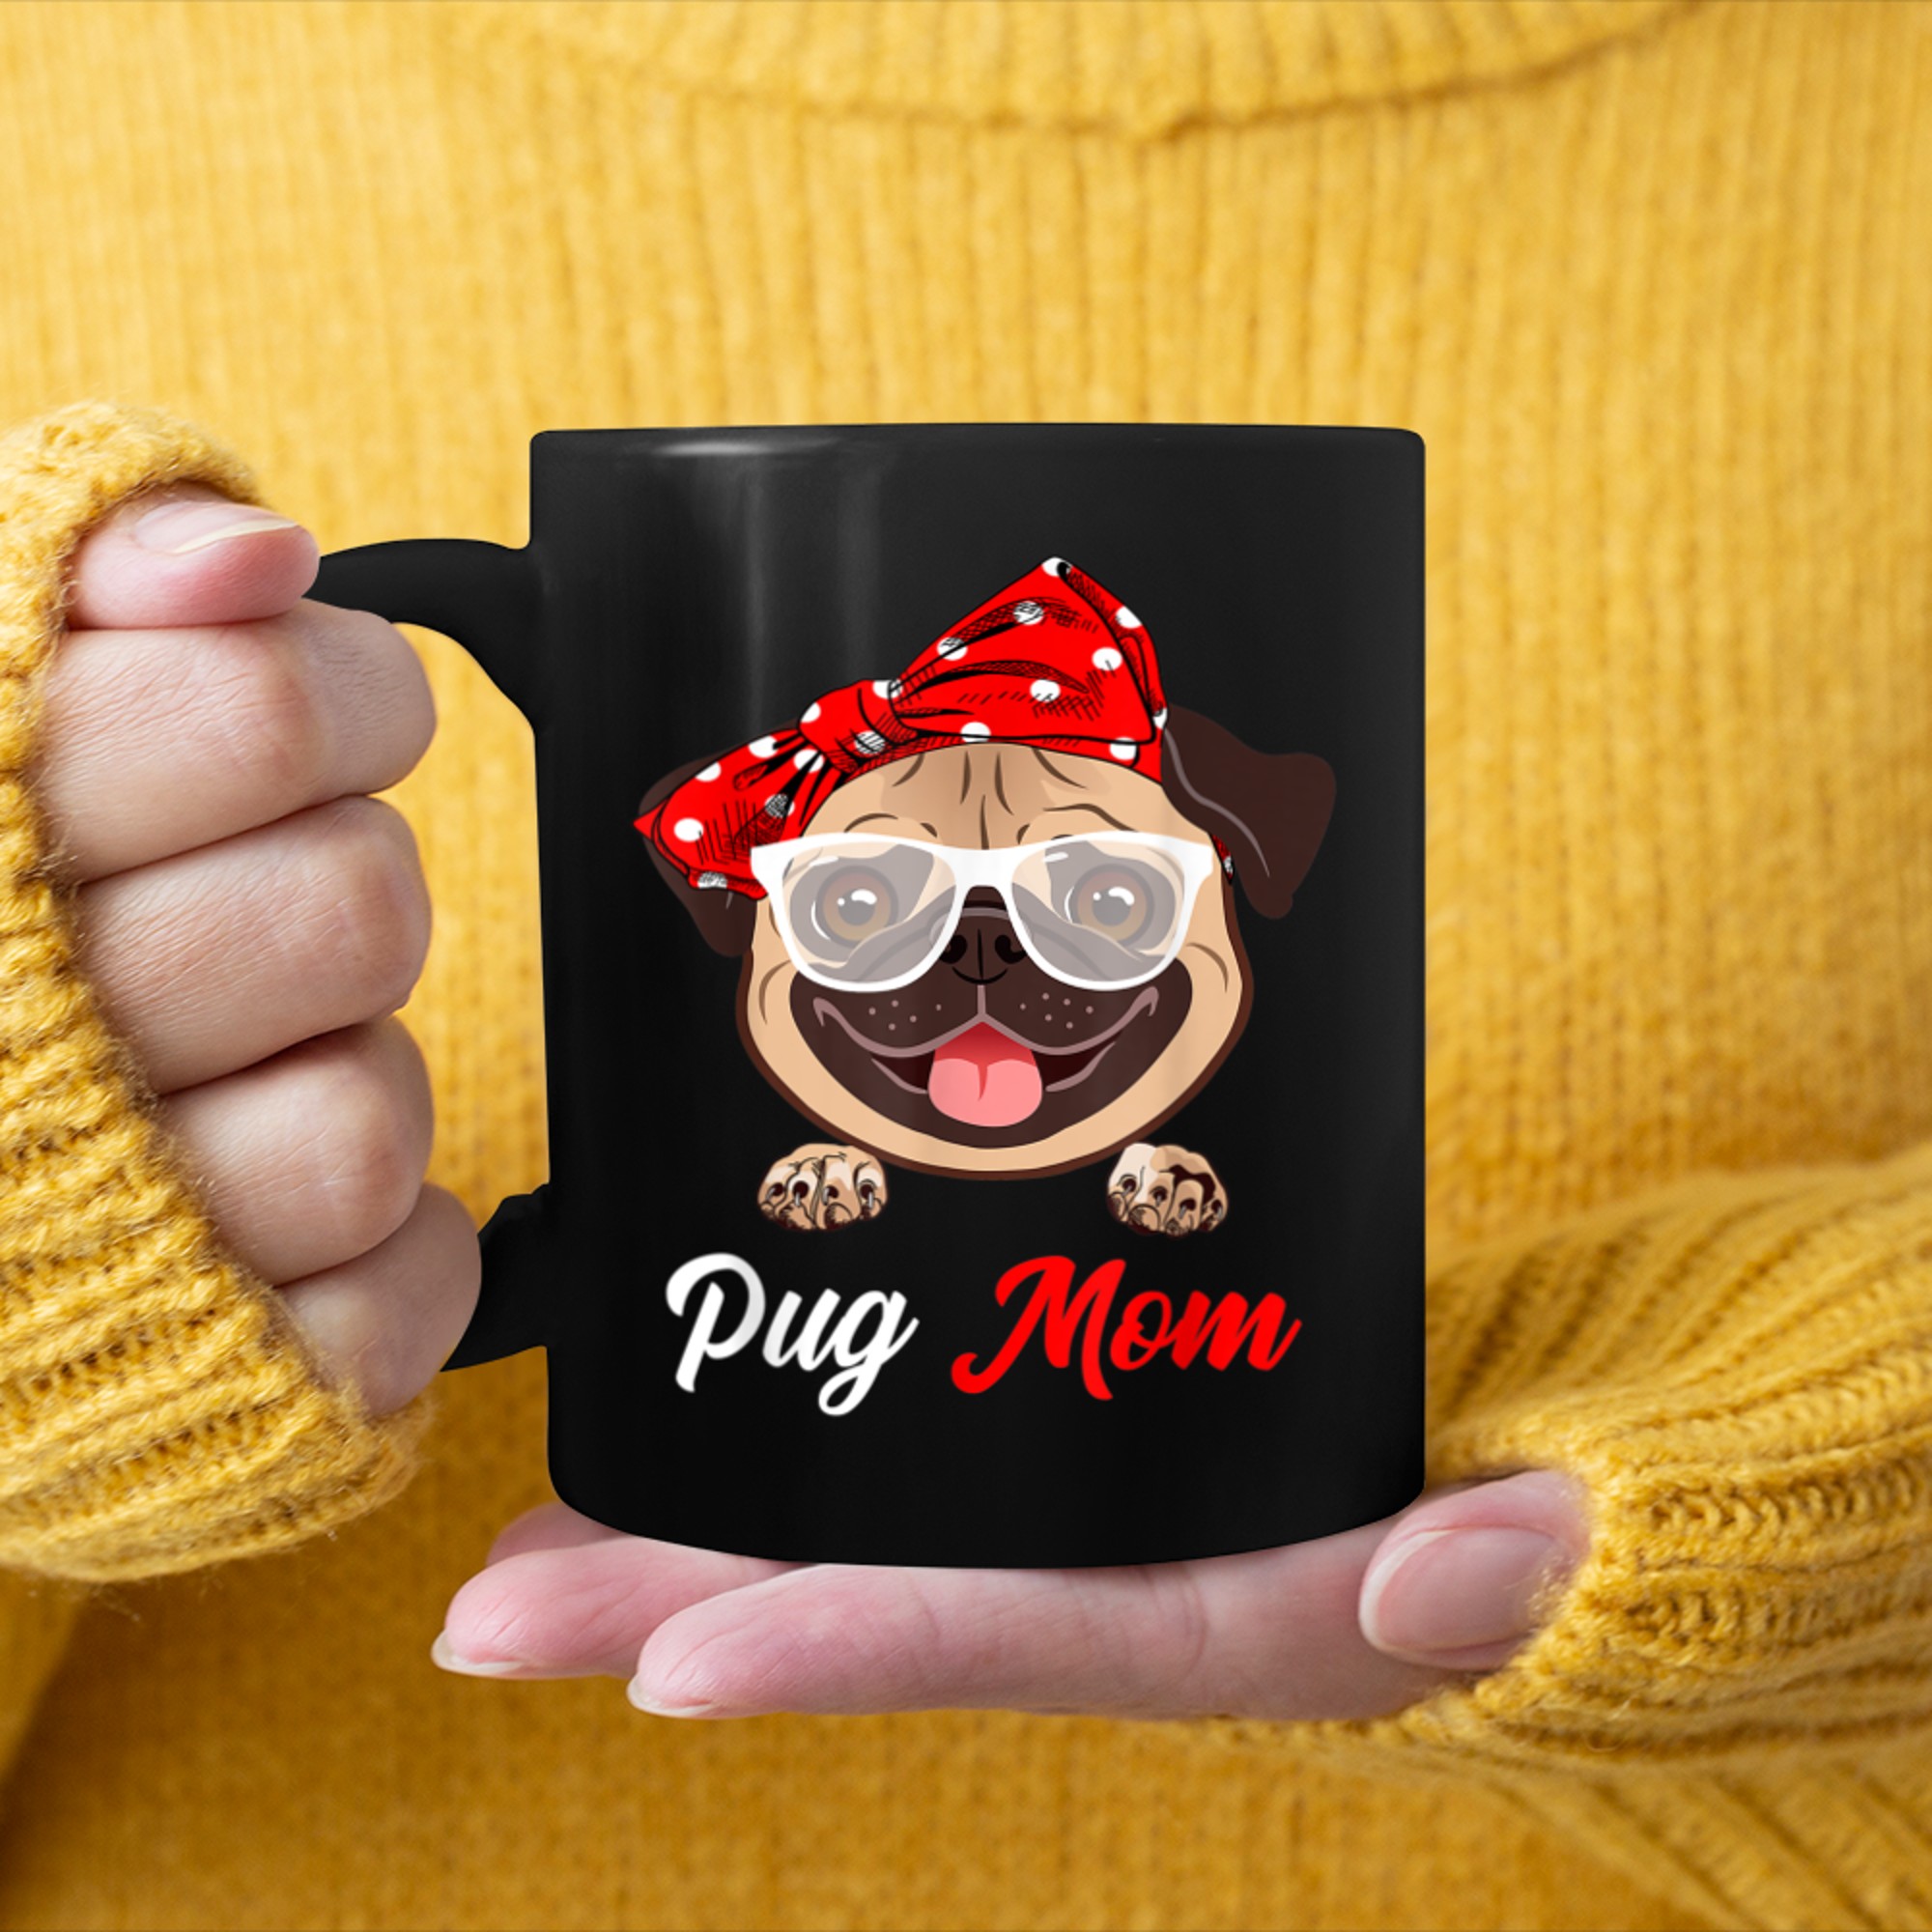 Best Pug Mom Ever Funny Dog Mom Vintage Gifts mug black